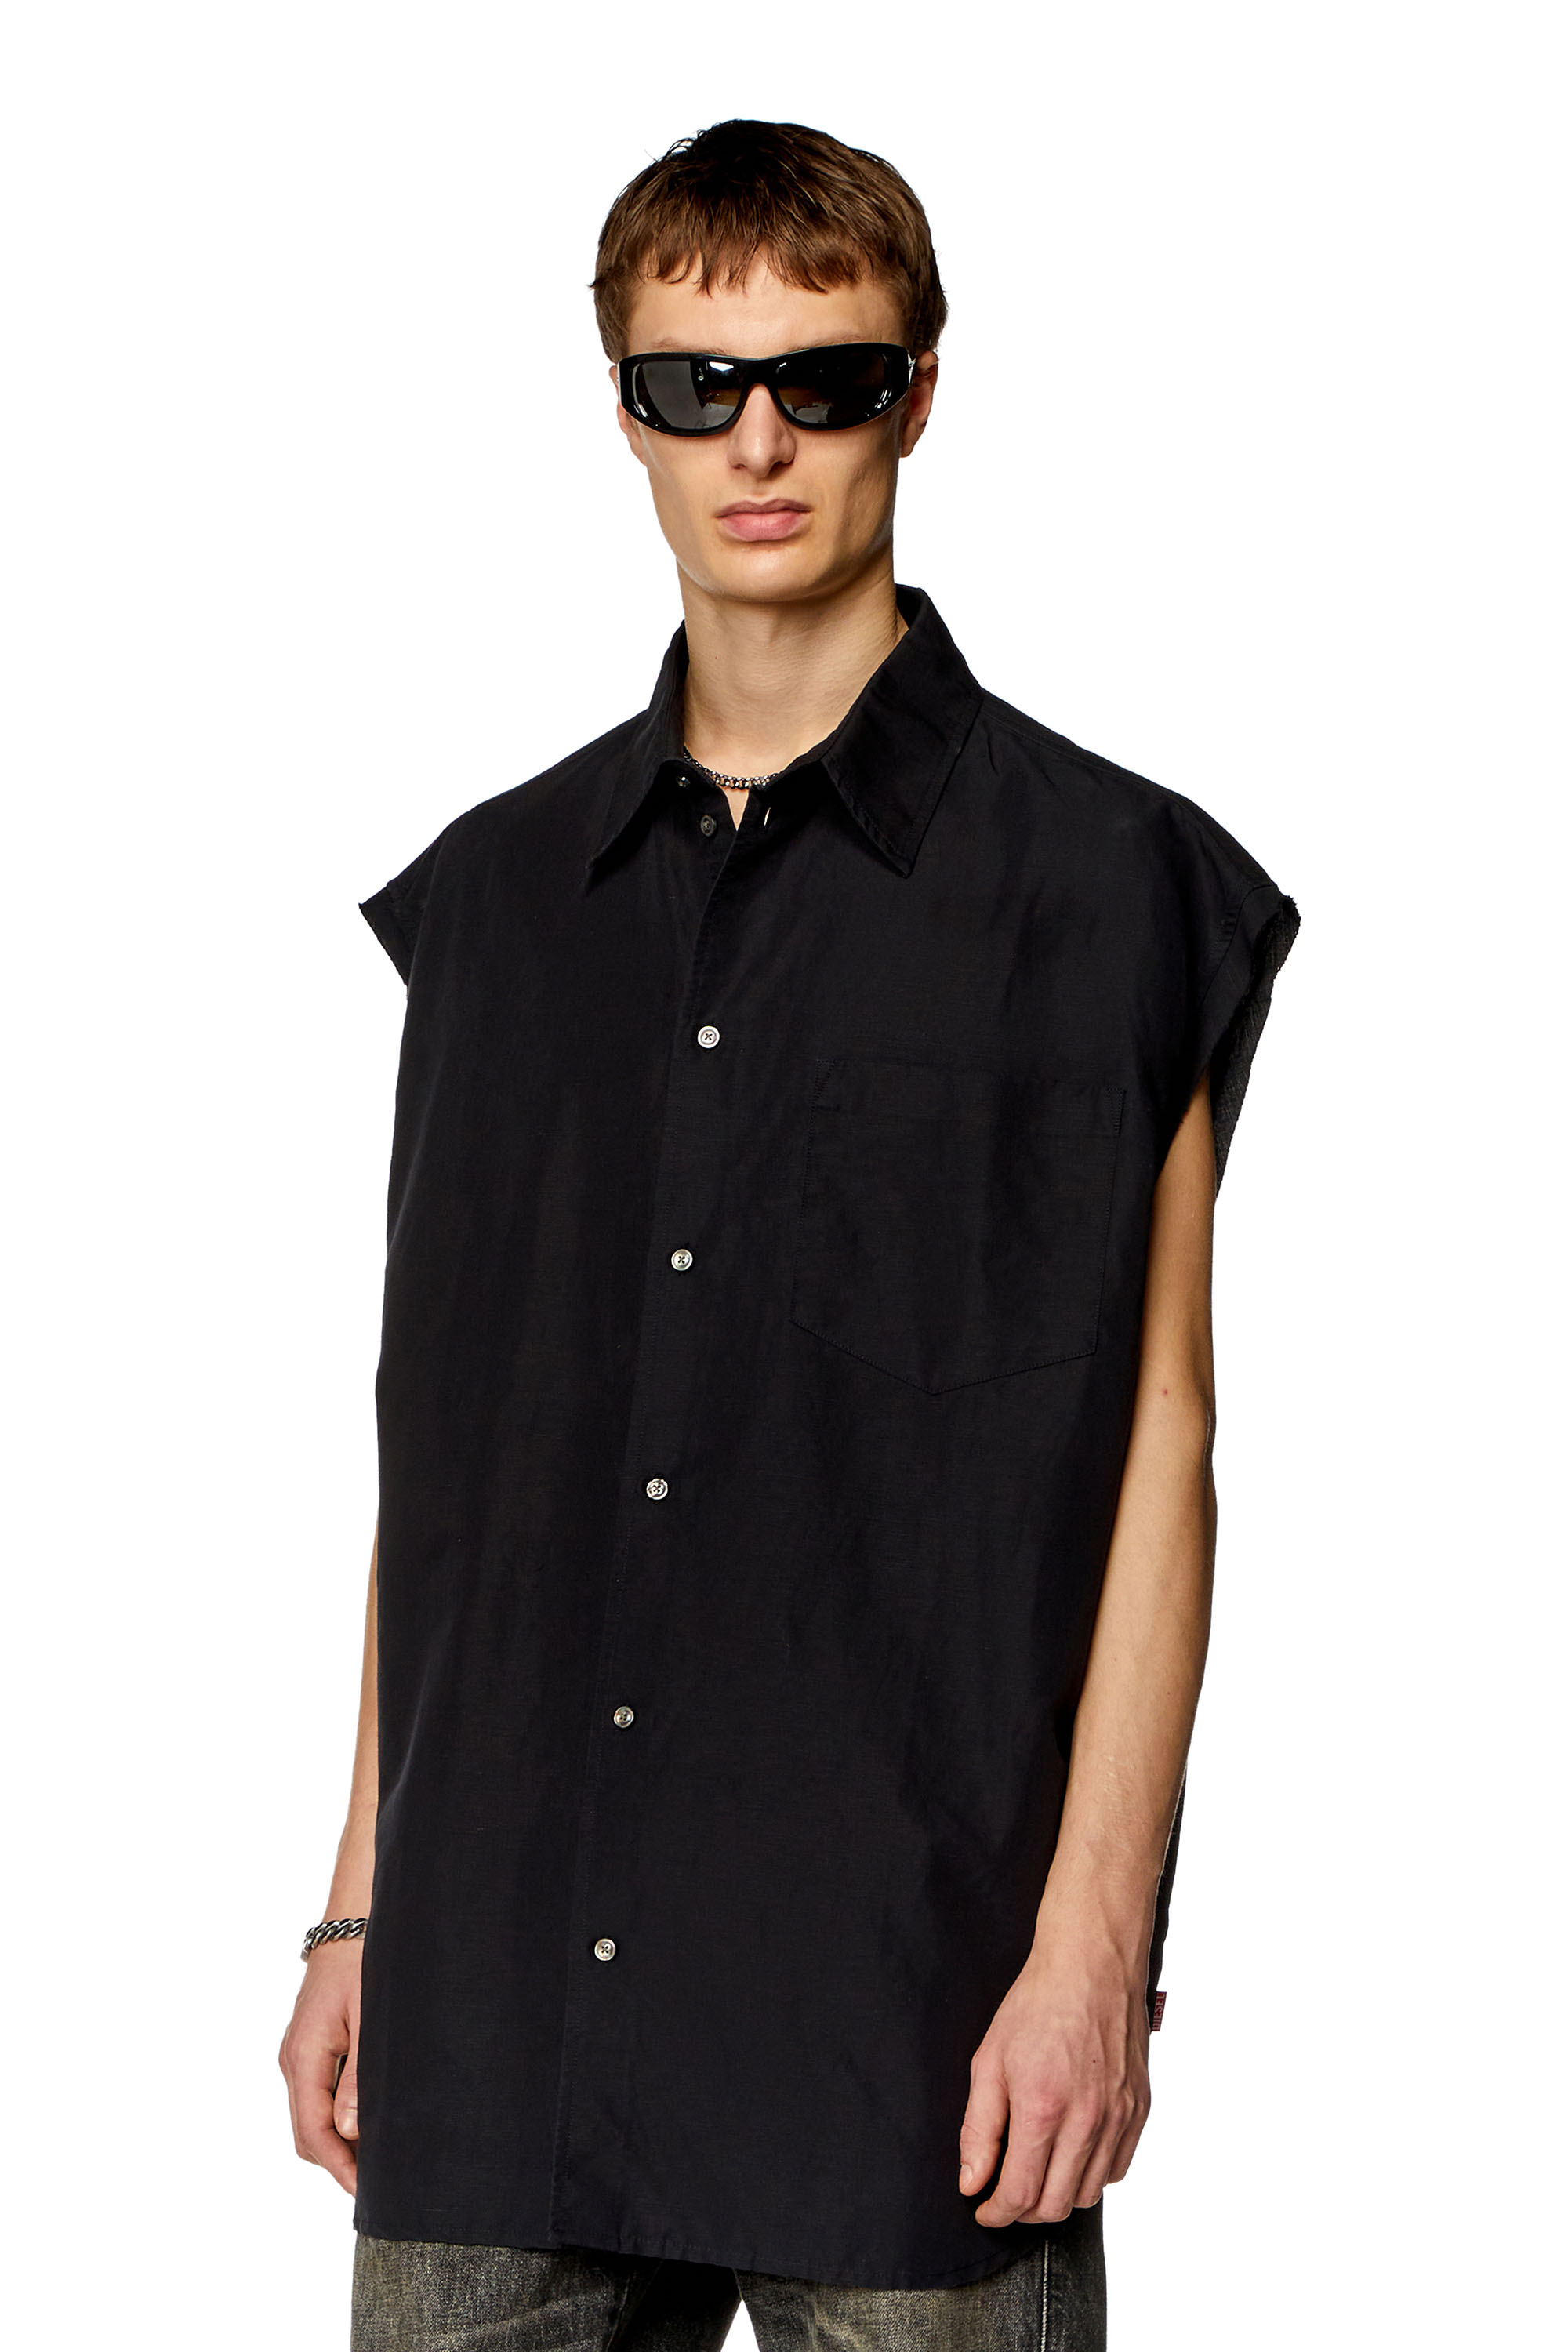 Diesel - S-SIMENS, Man Sleeveless shirt in linen blend in Black - Image 1